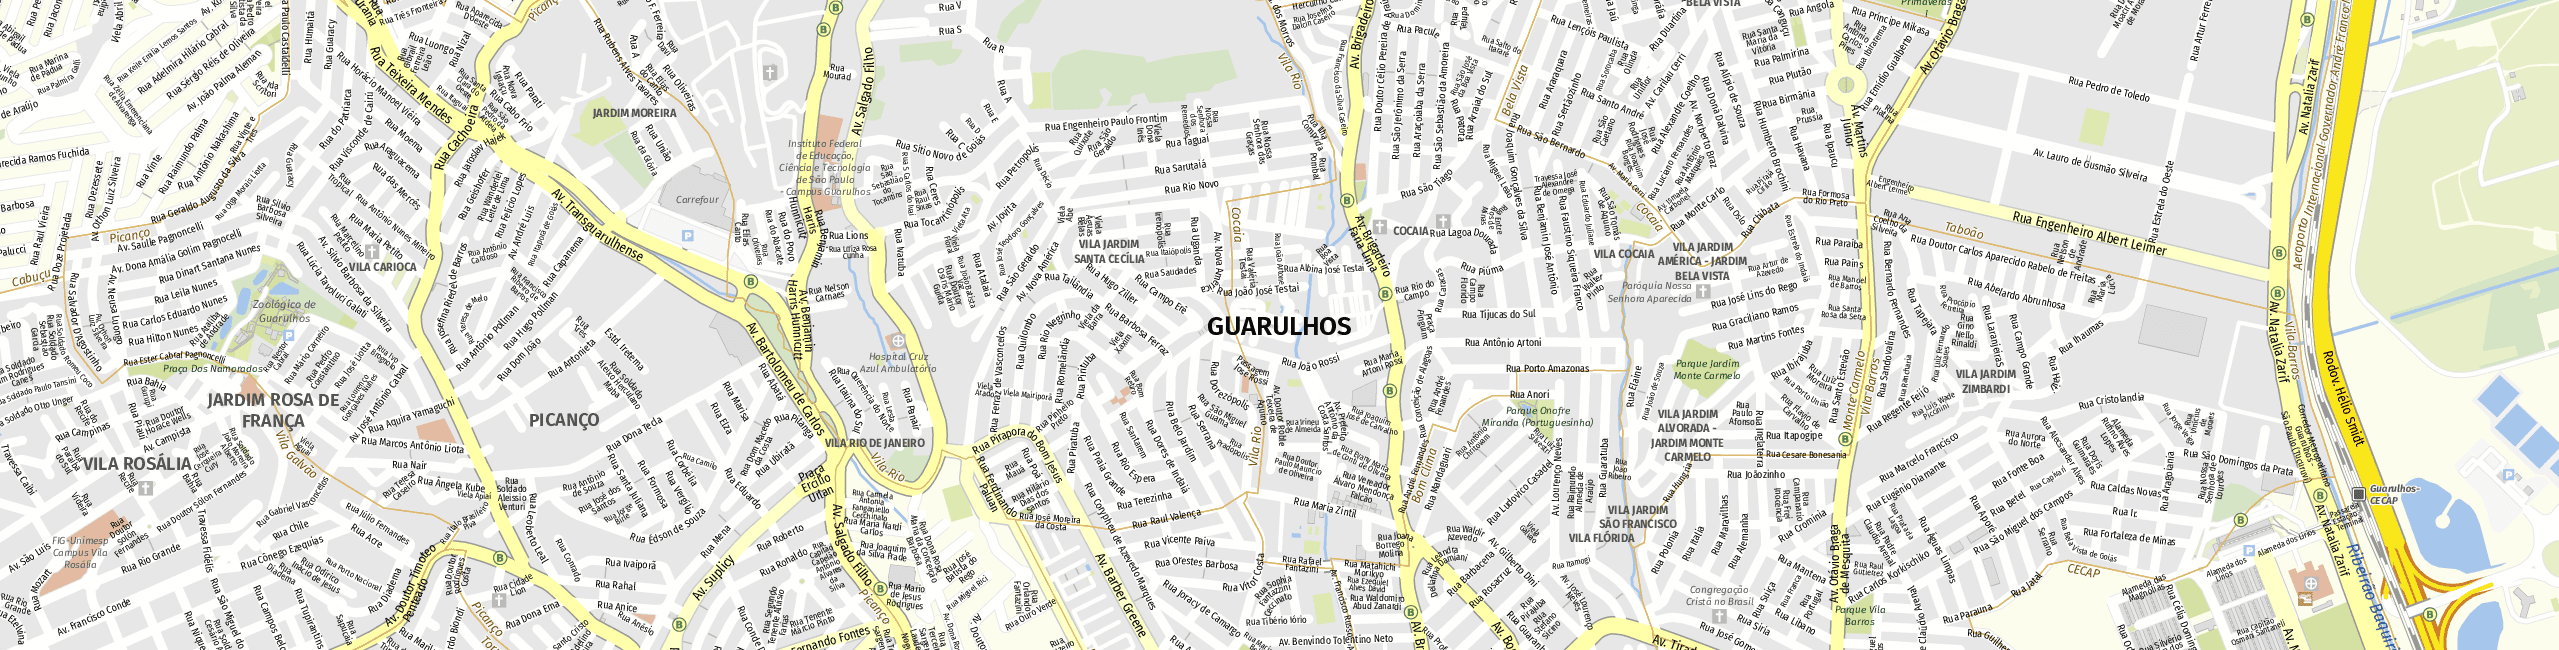 Stadtplan Guarulhos zum Downloaden.